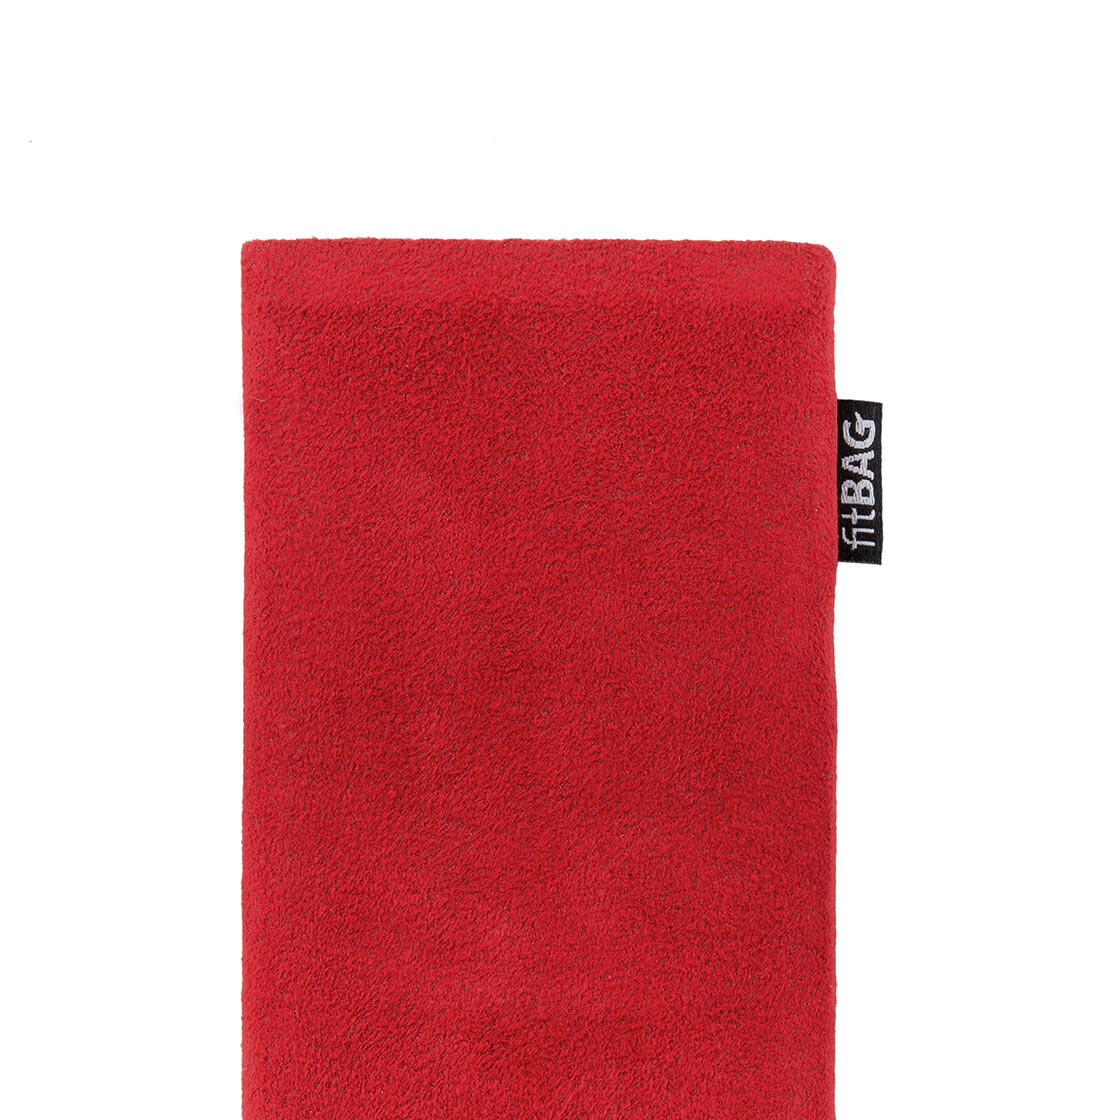 Made in Germany Hülle mit Reinigungsfunktion fitBAG Classic Rot Handytasche Tasche aus original Alcantara mit Microfaserinnenfutter für OnePlus 8 Pro 